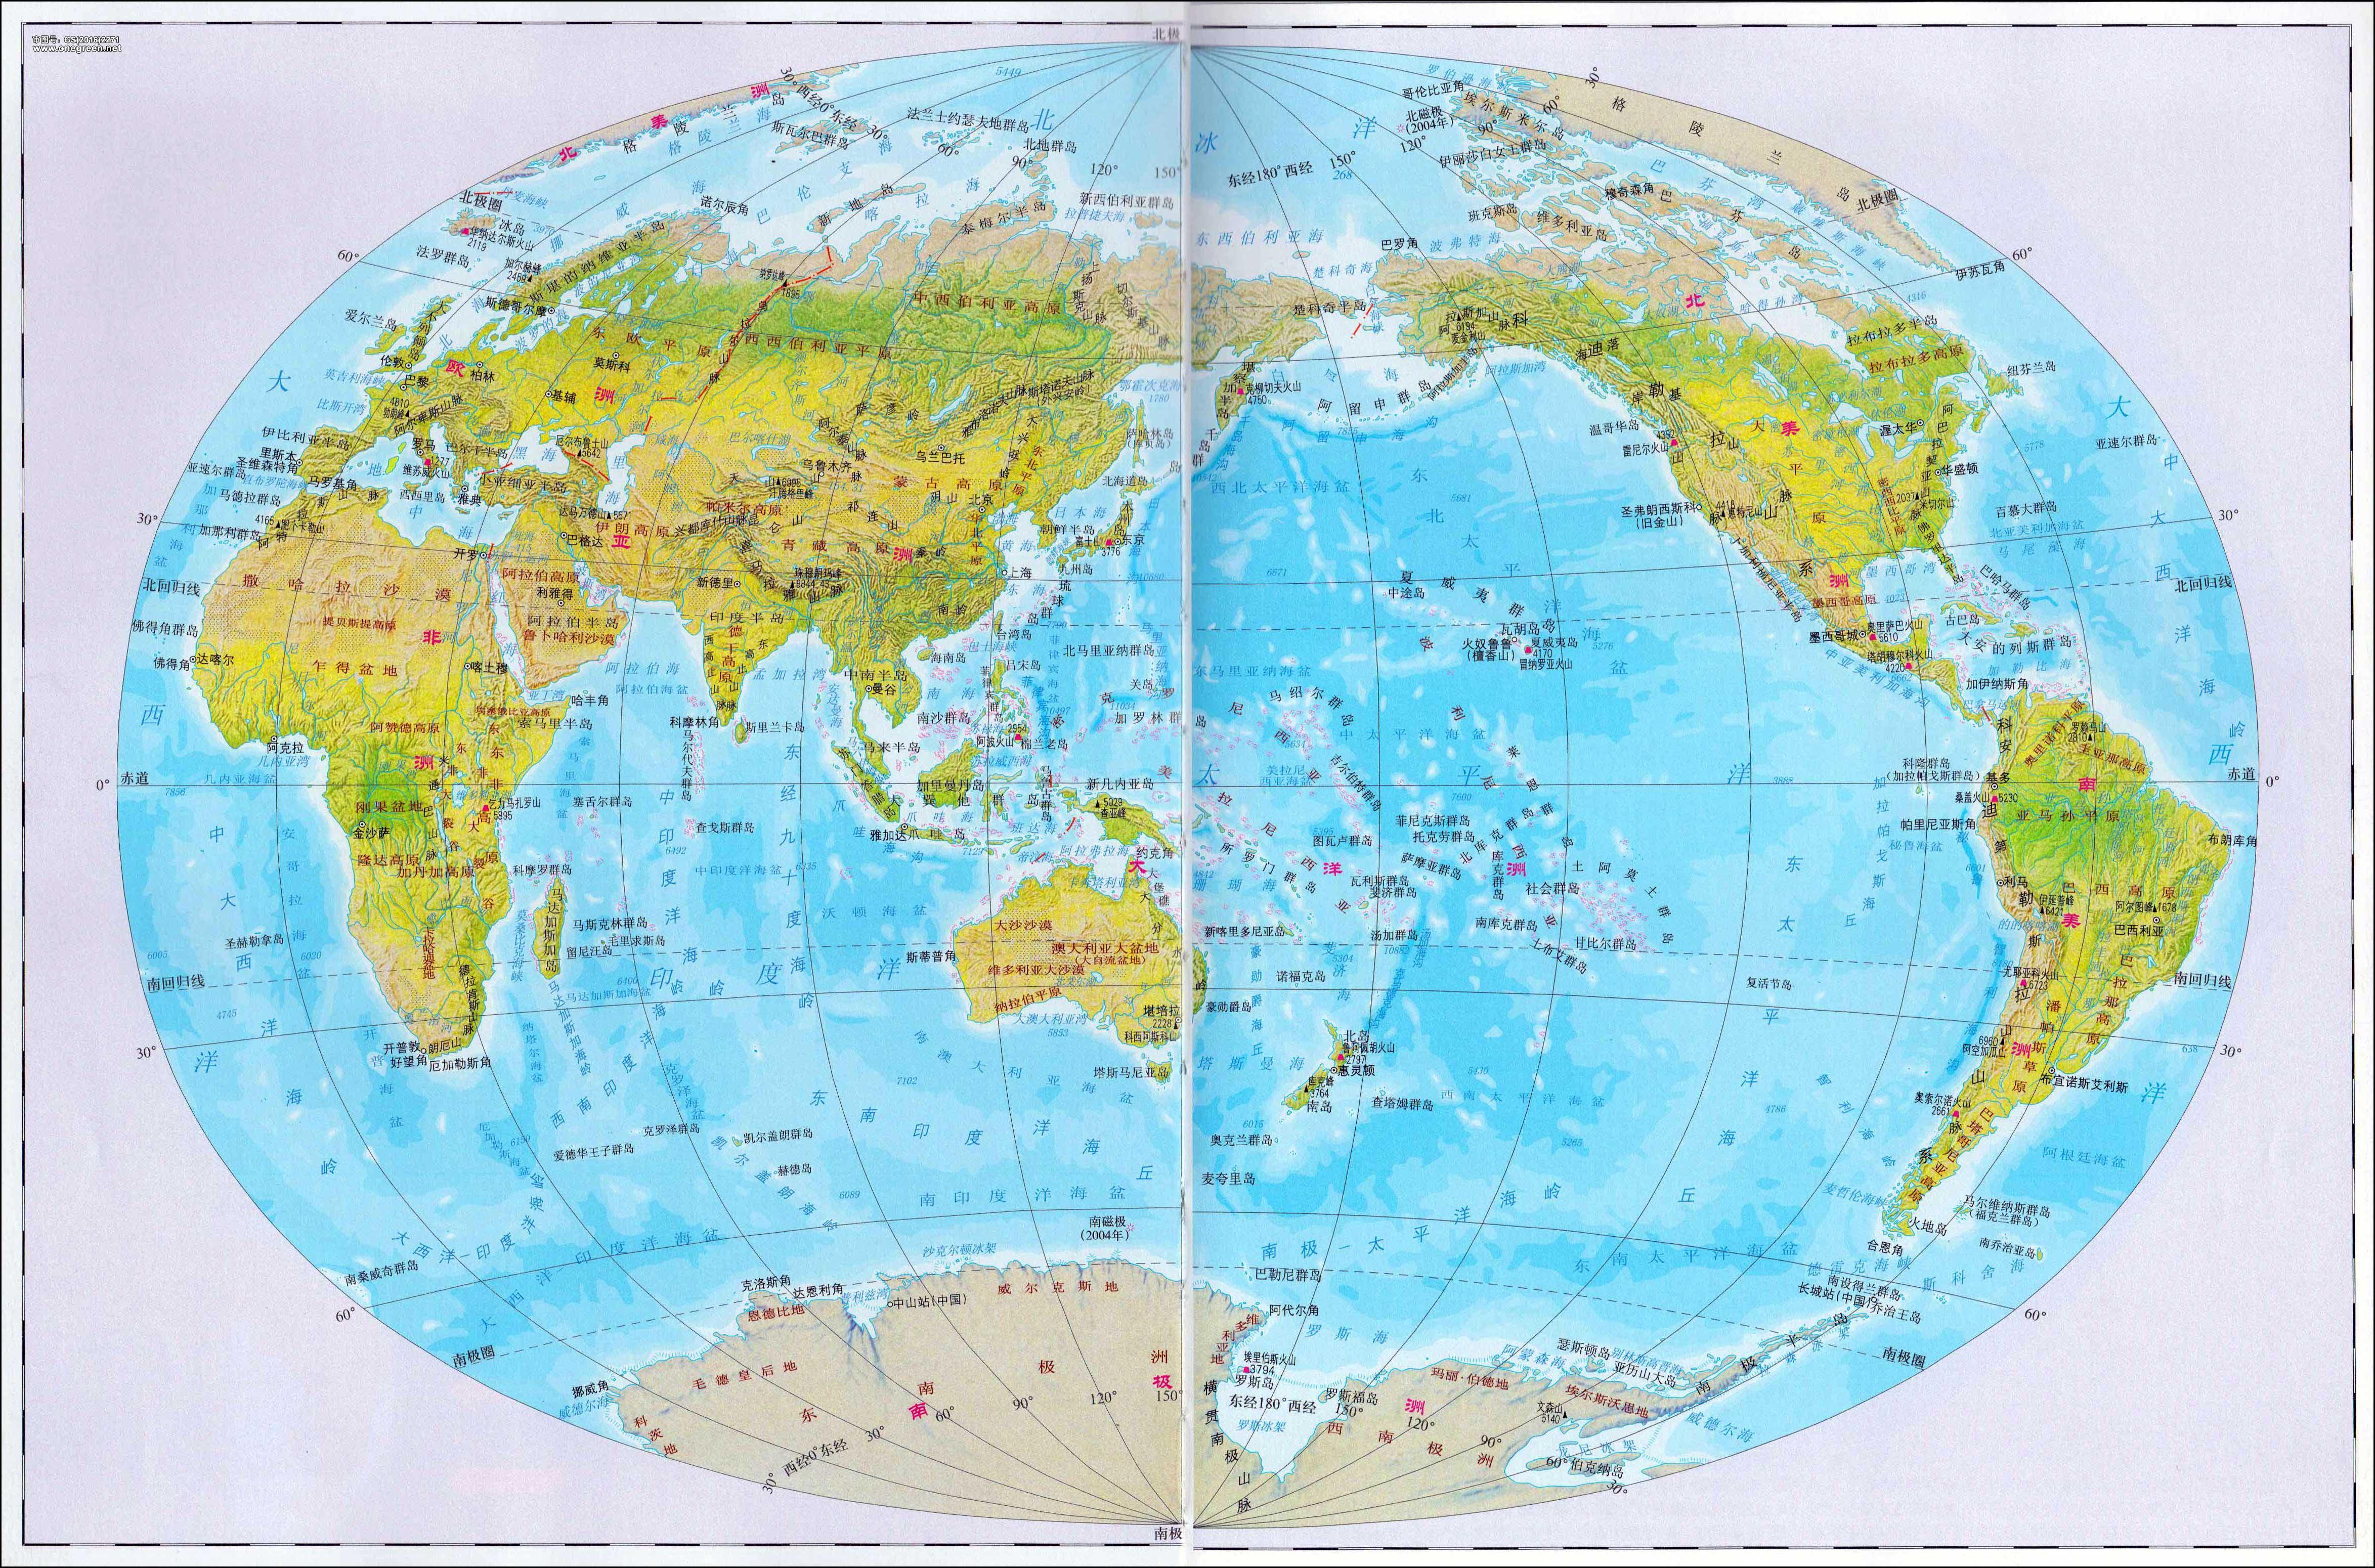 世界地理地图高清版大图_世界地理地图高清_微信公众号文章